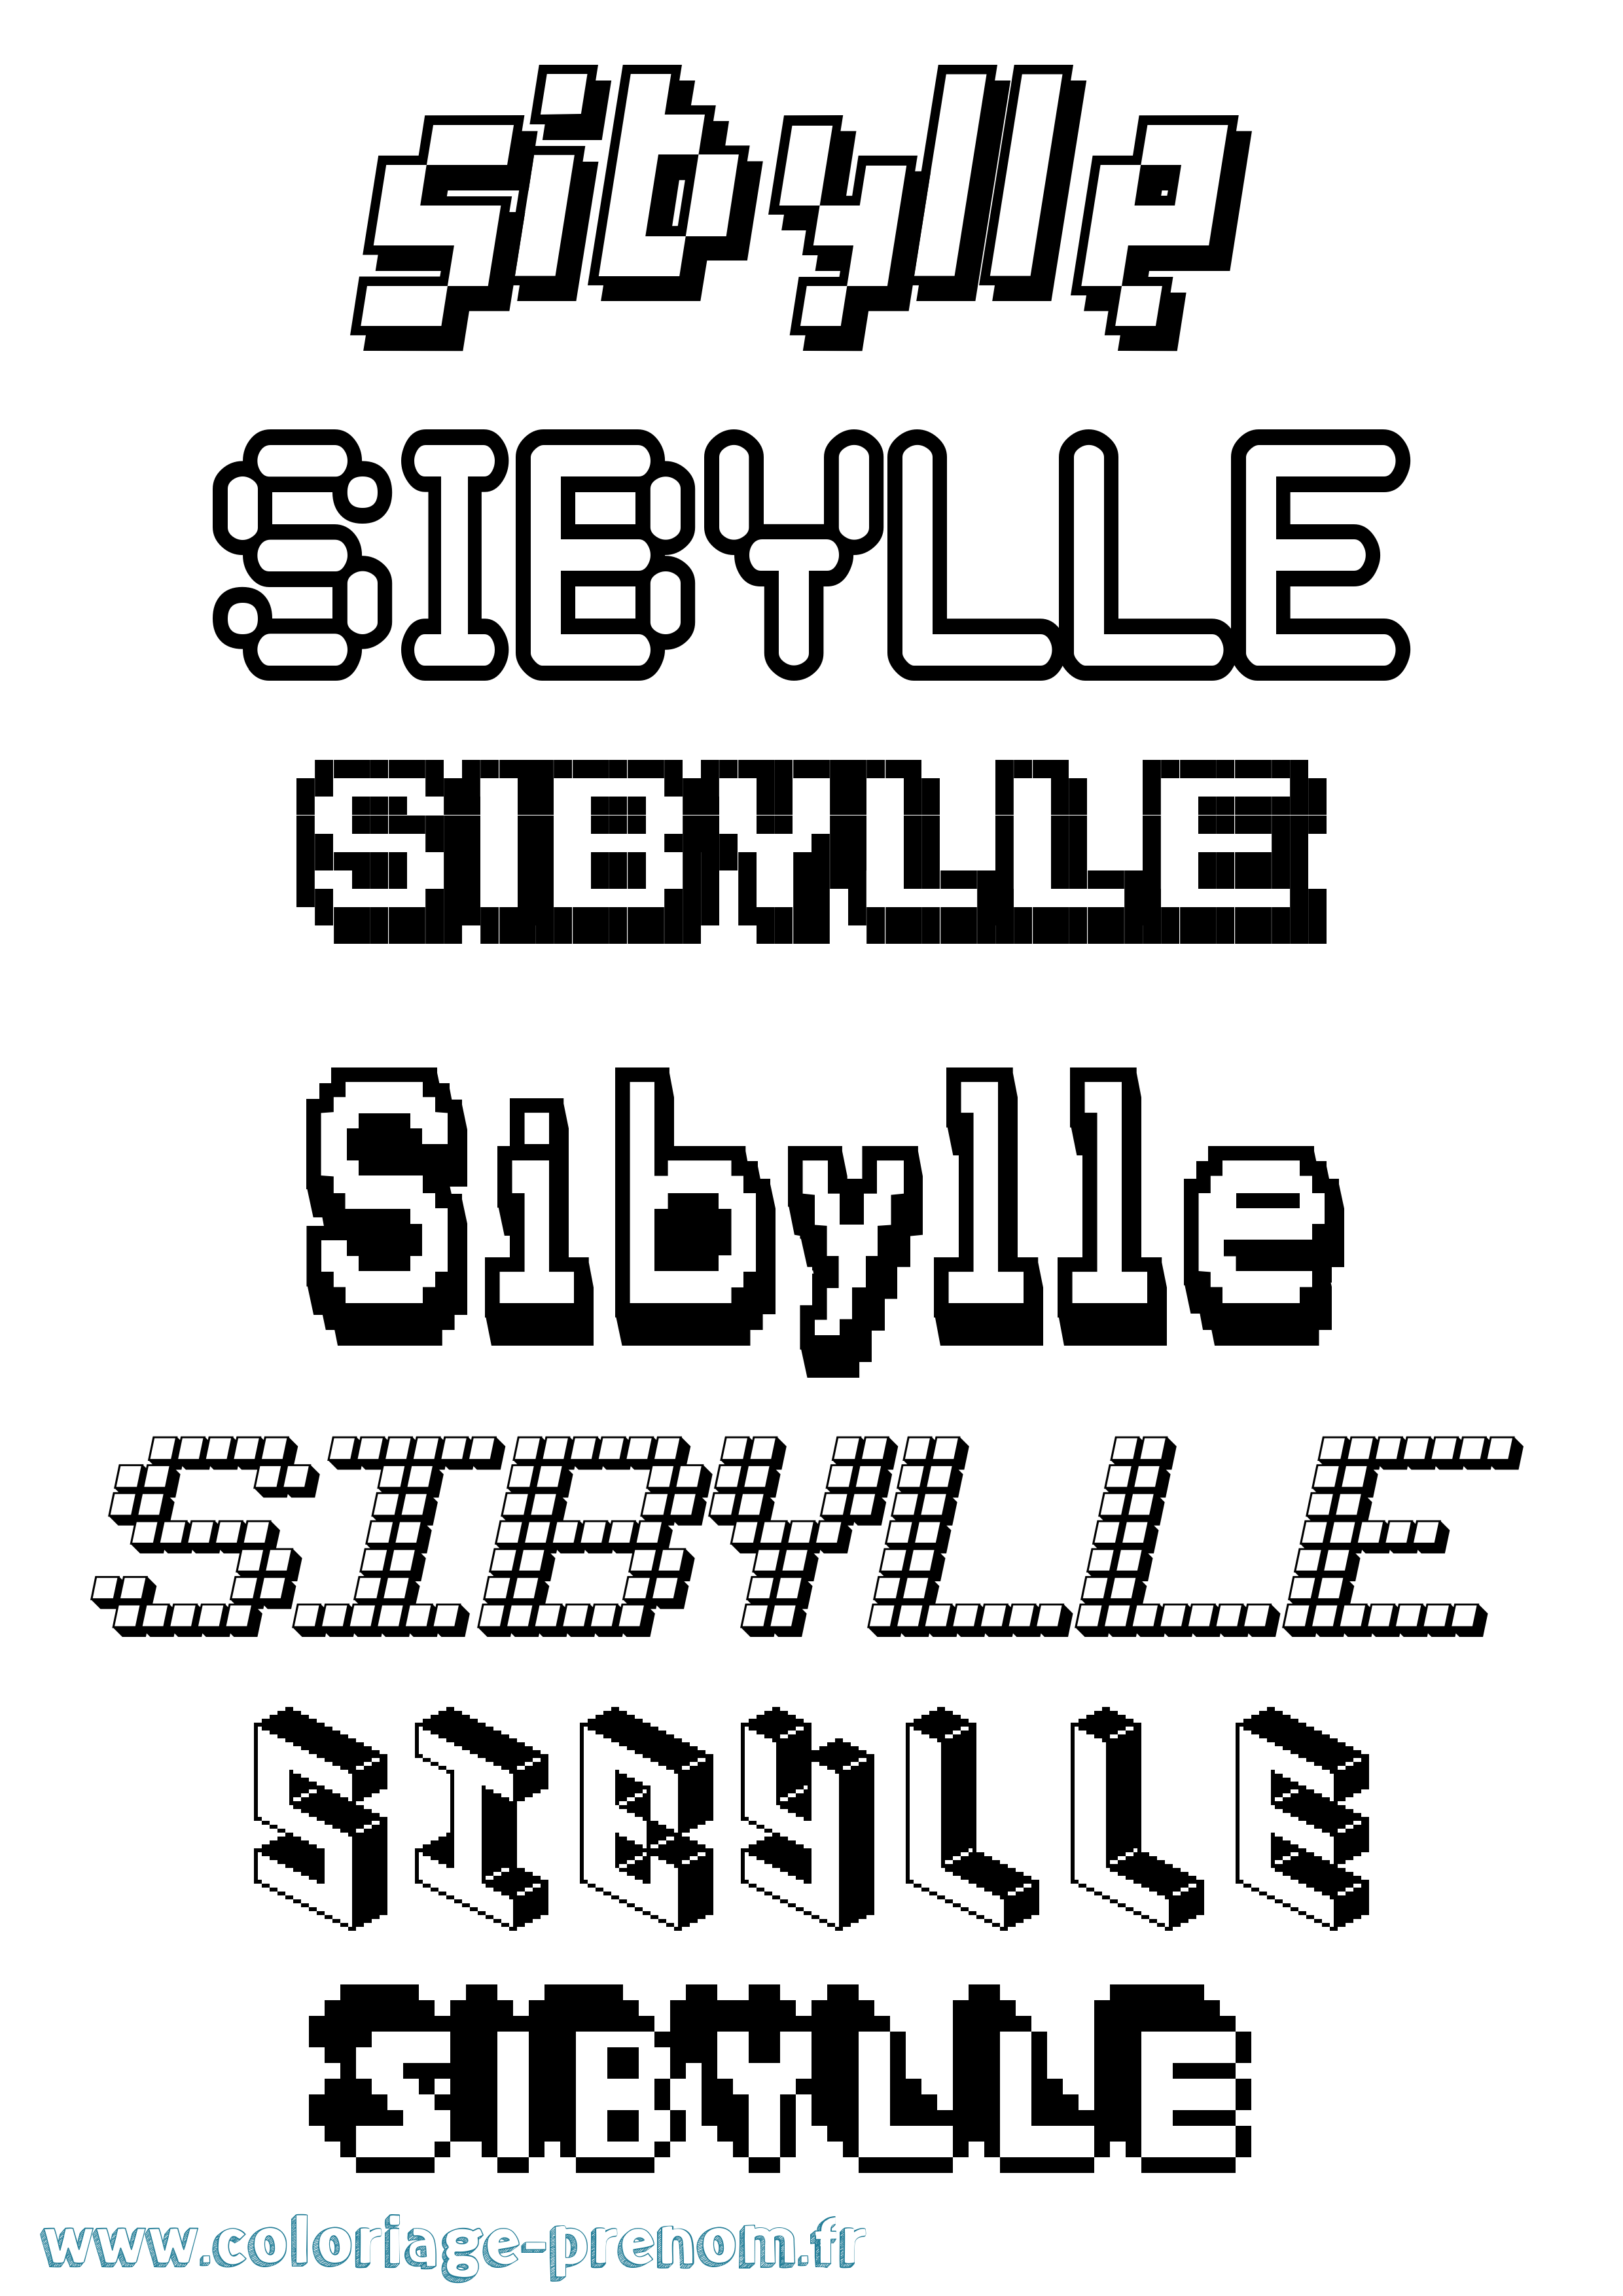 Coloriage prénom Sibylle Pixel